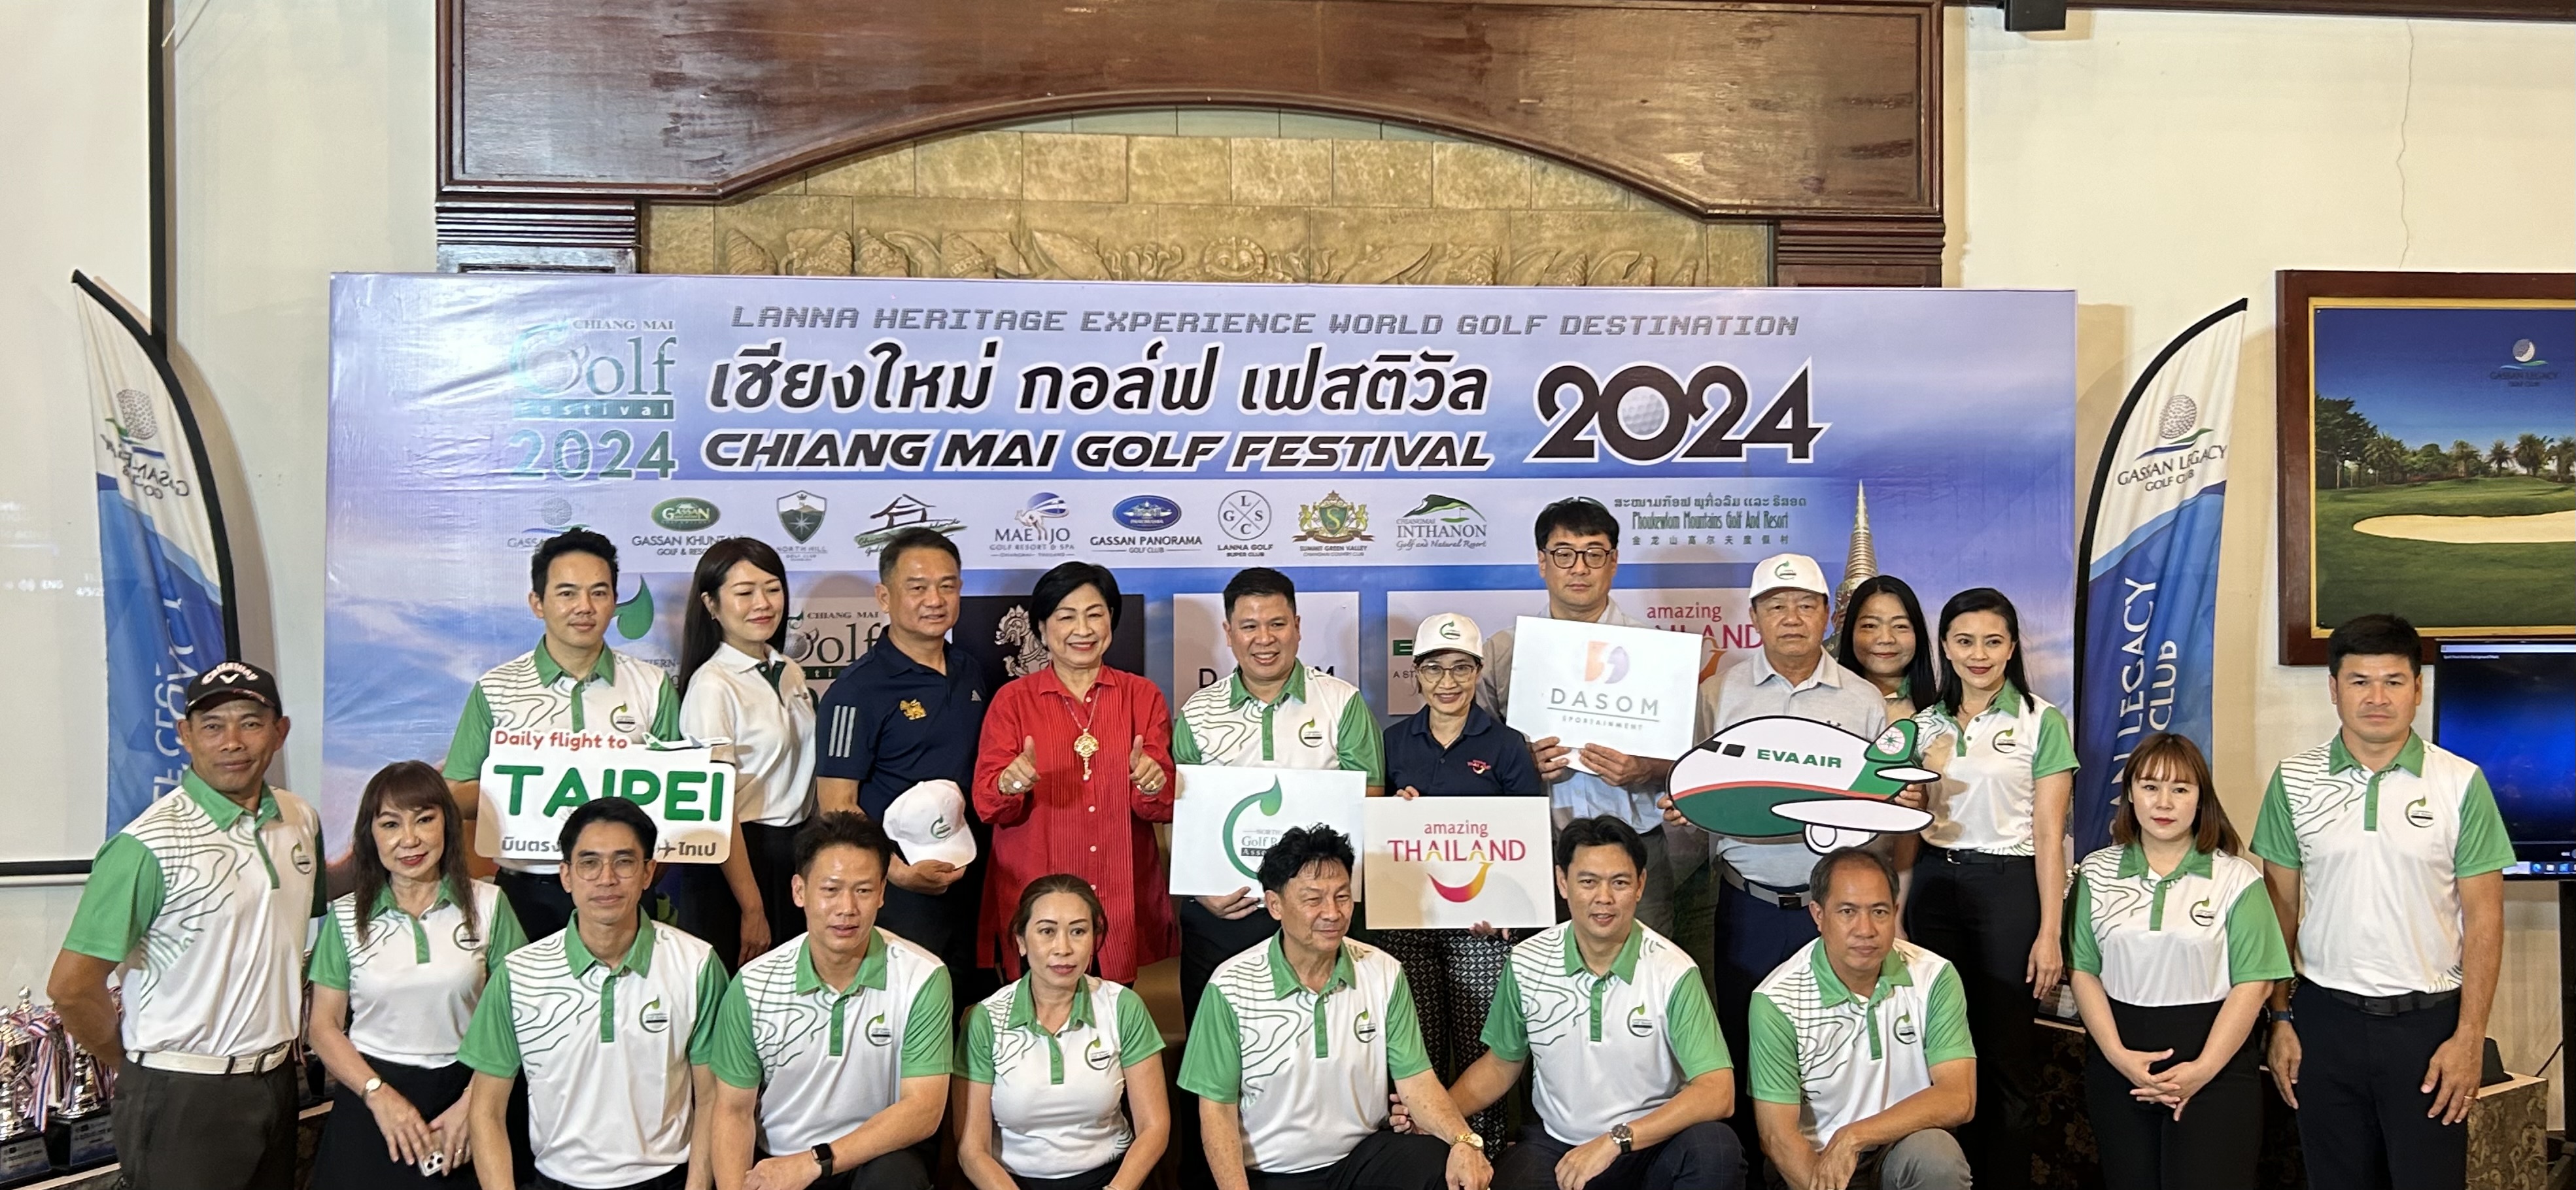 สมาคมกอล์ฟรีสอร์ทภาคเหนือ เปิดตัวโครงการ "Chiang Mai Golf Festival 2024"กระตุ้นการท่องเที่ยวเชิงกีฬากอล์ฟภาคเหนือ